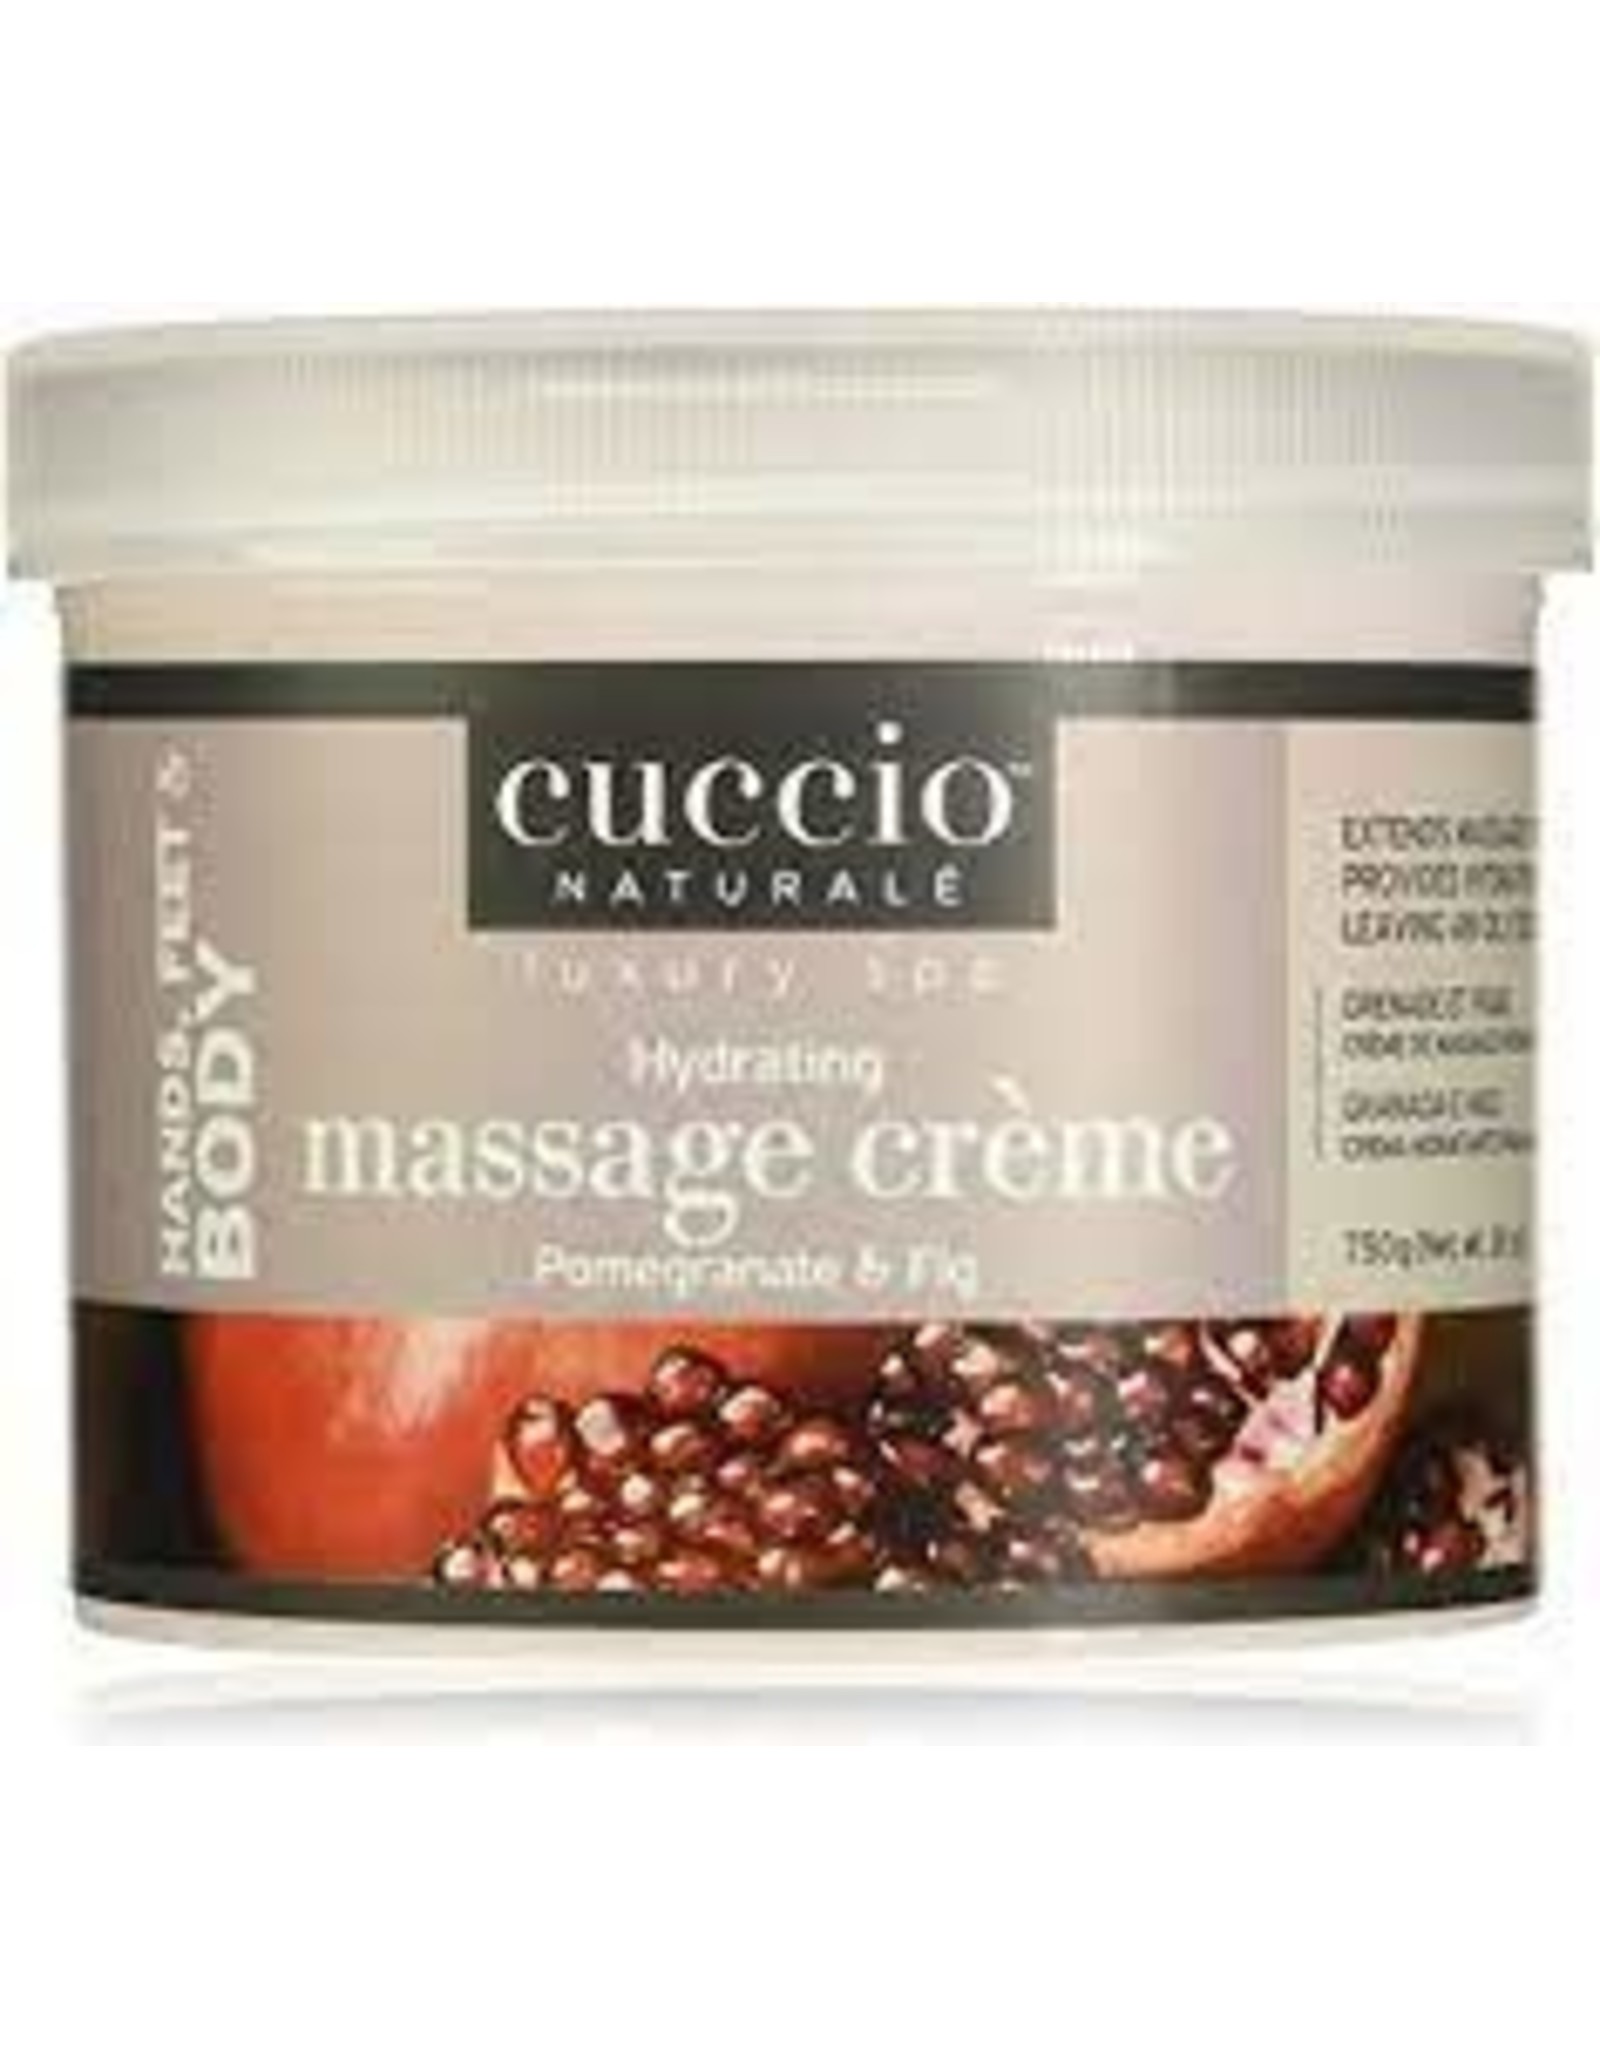 CUCCIO Massage Creme Pomegranate 26oz